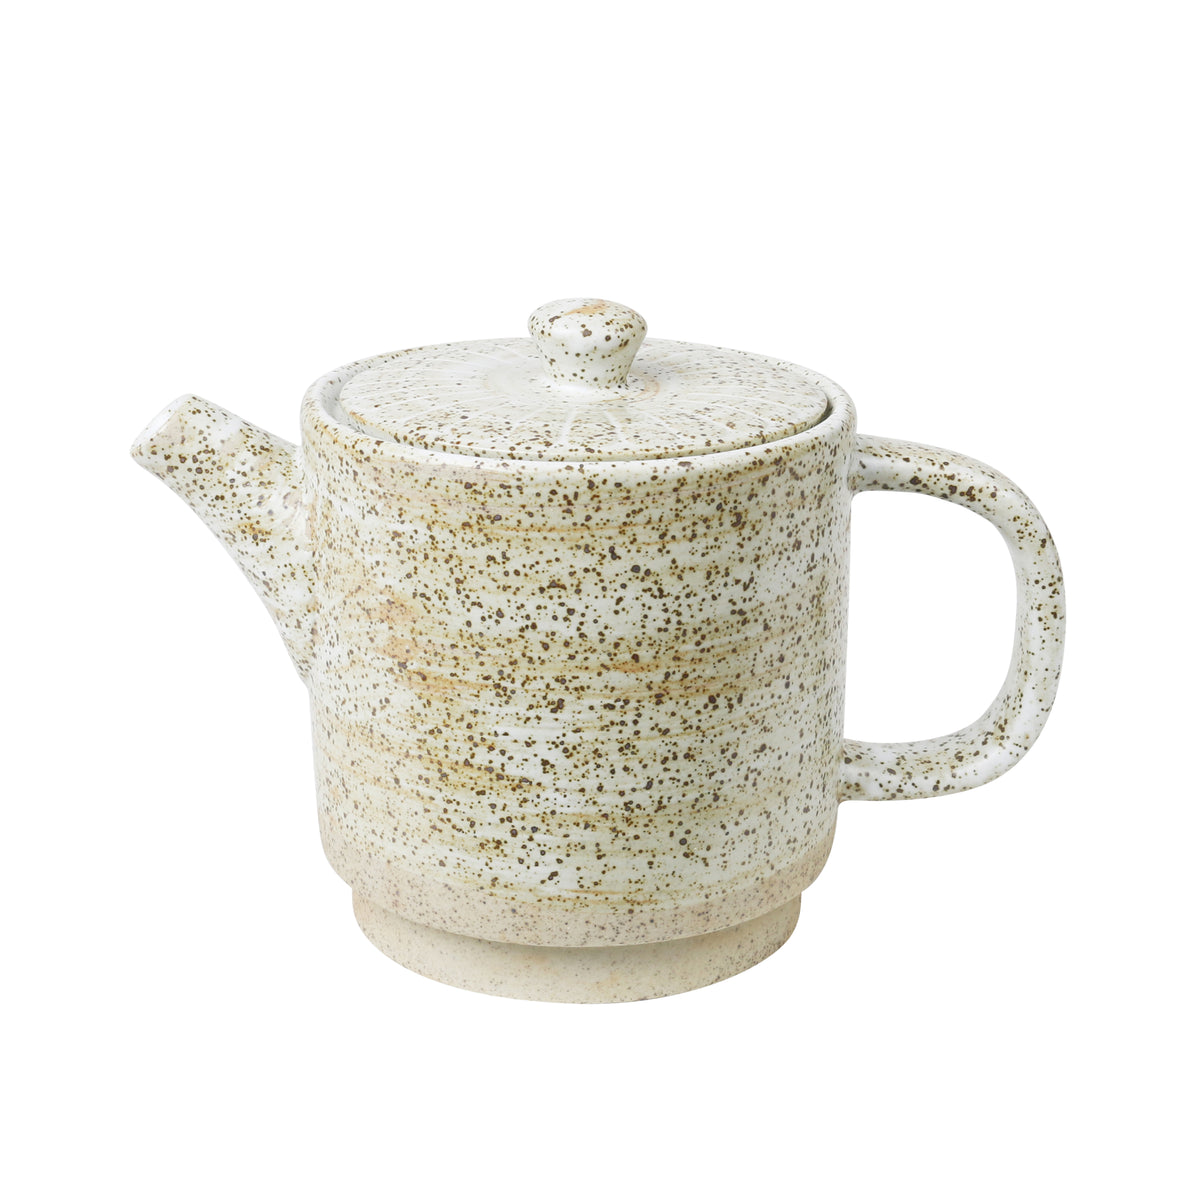 Ceylon Teapot / White